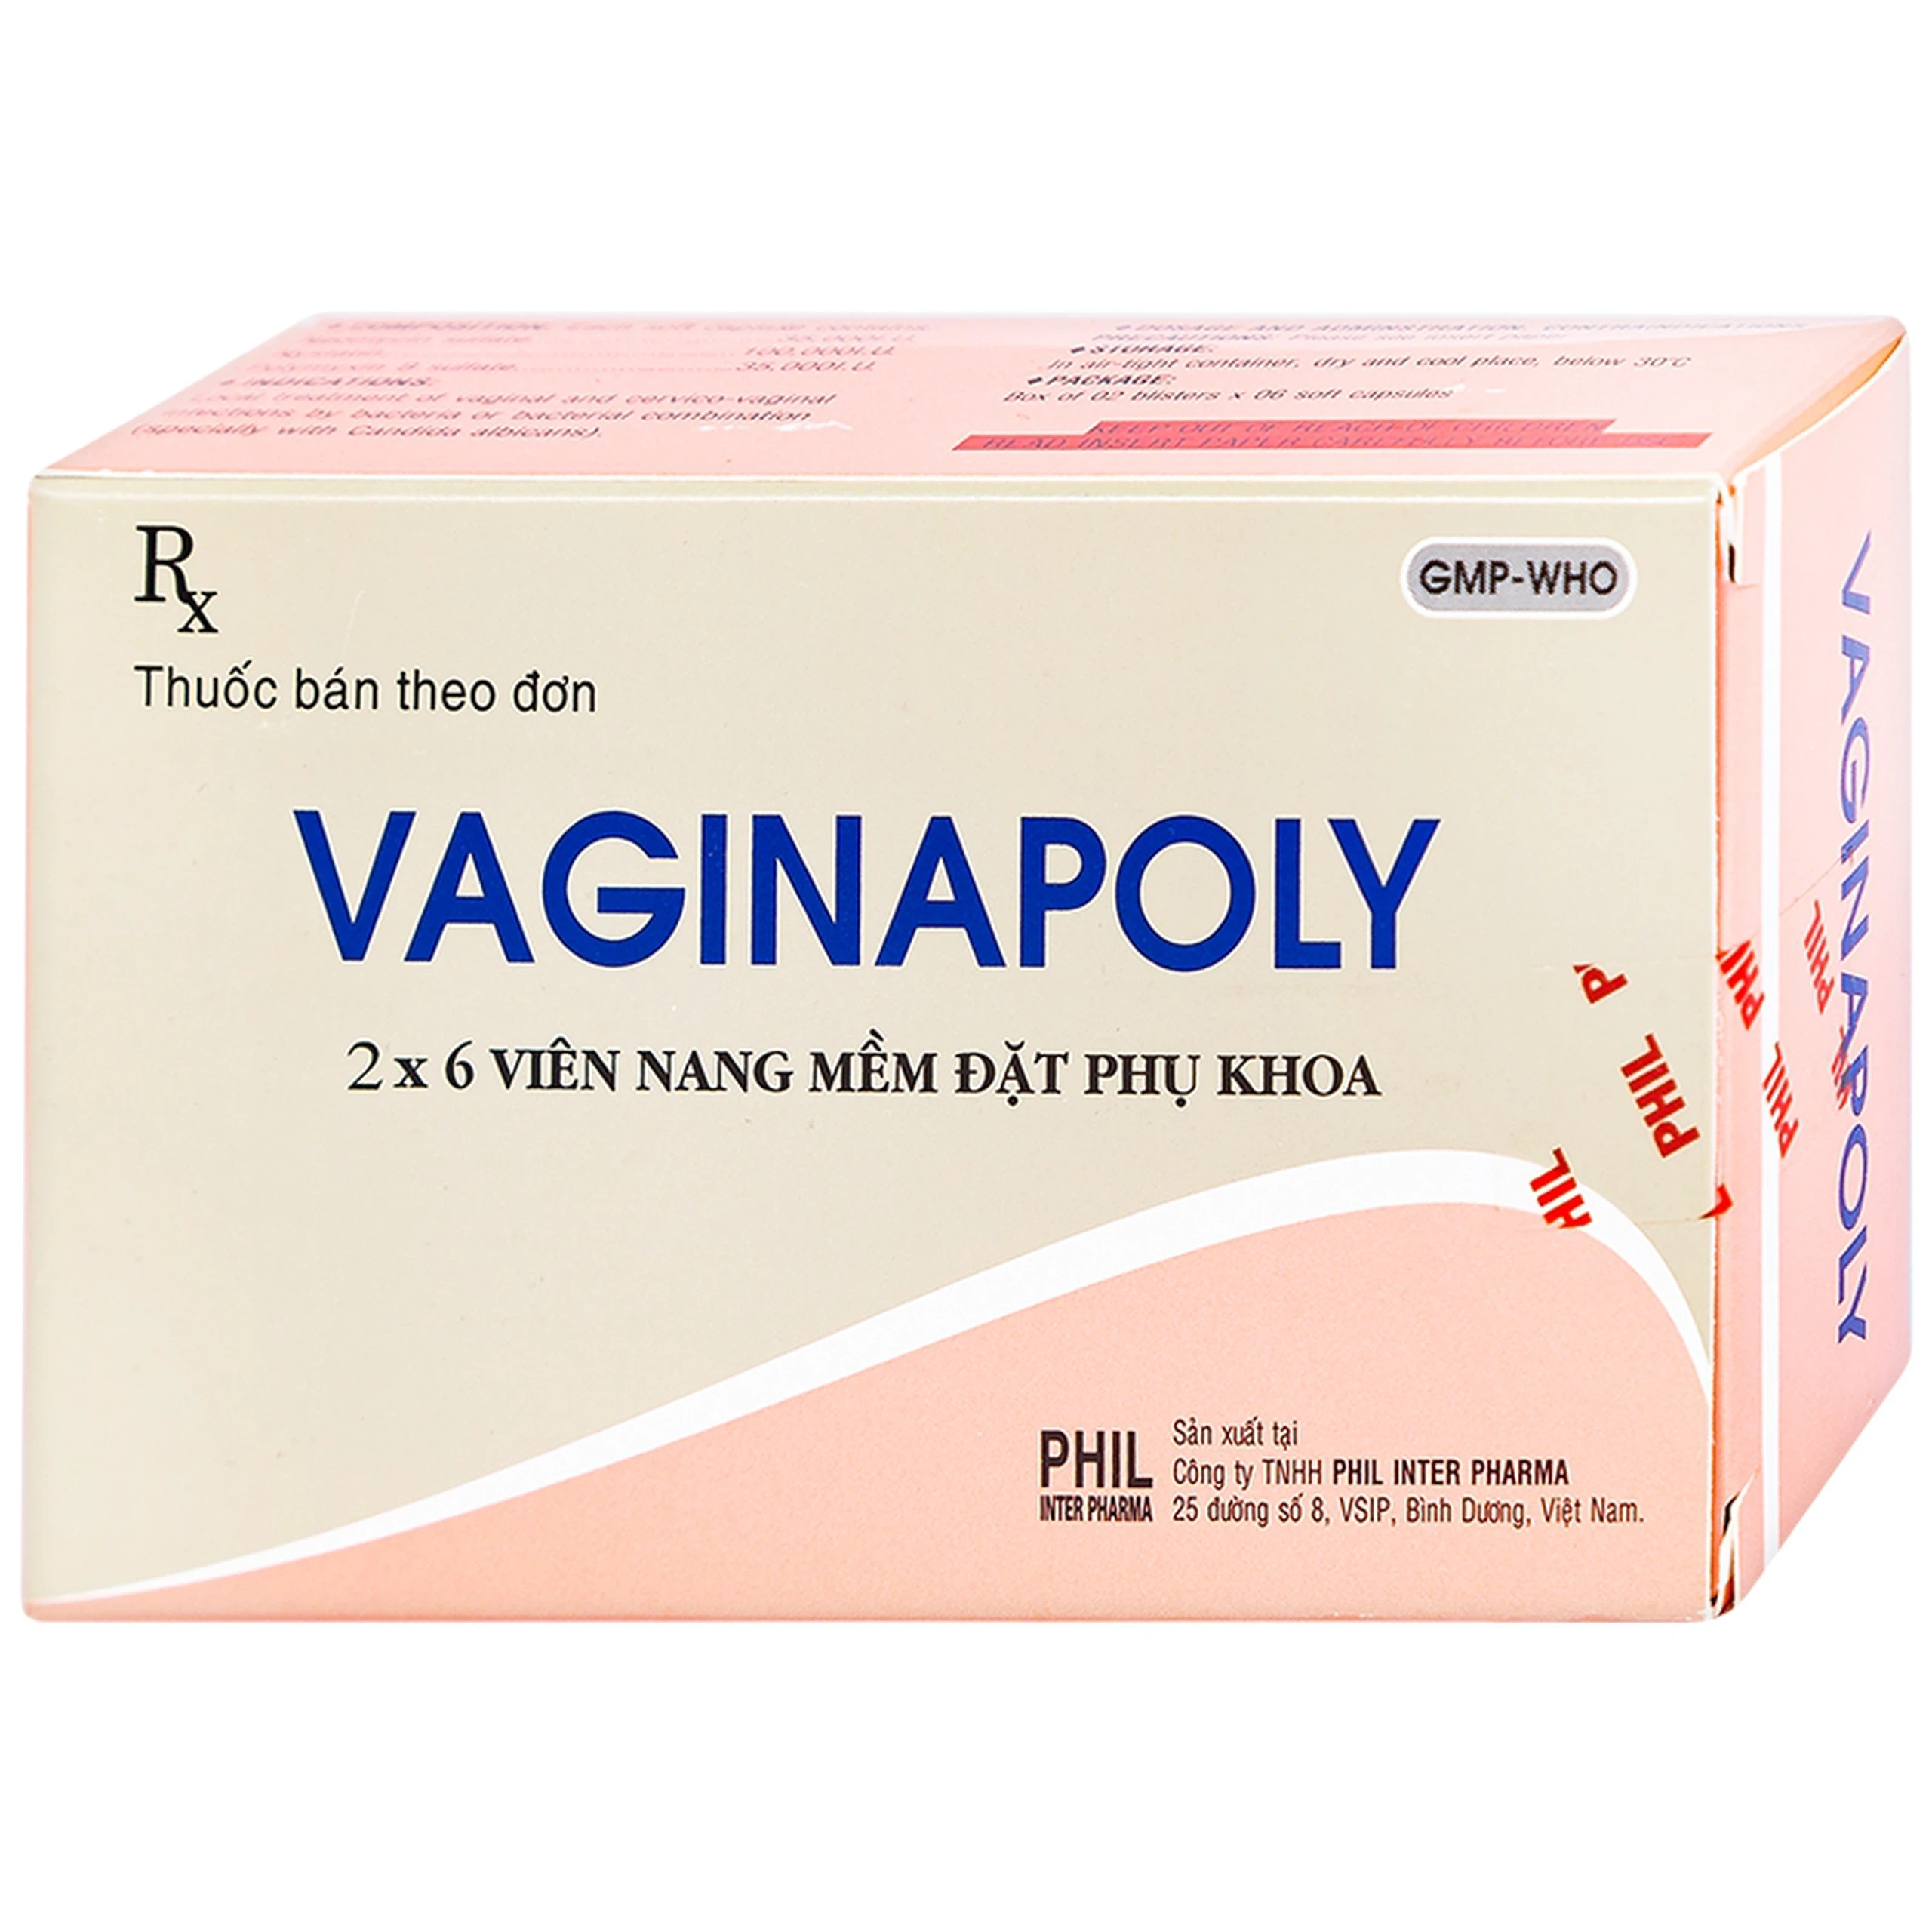 Viên đặt phụ khoa Vaginapoly Phil Inter điều trị nhiễm trùng ở âm đạo (2 vỉ x 6 viên)